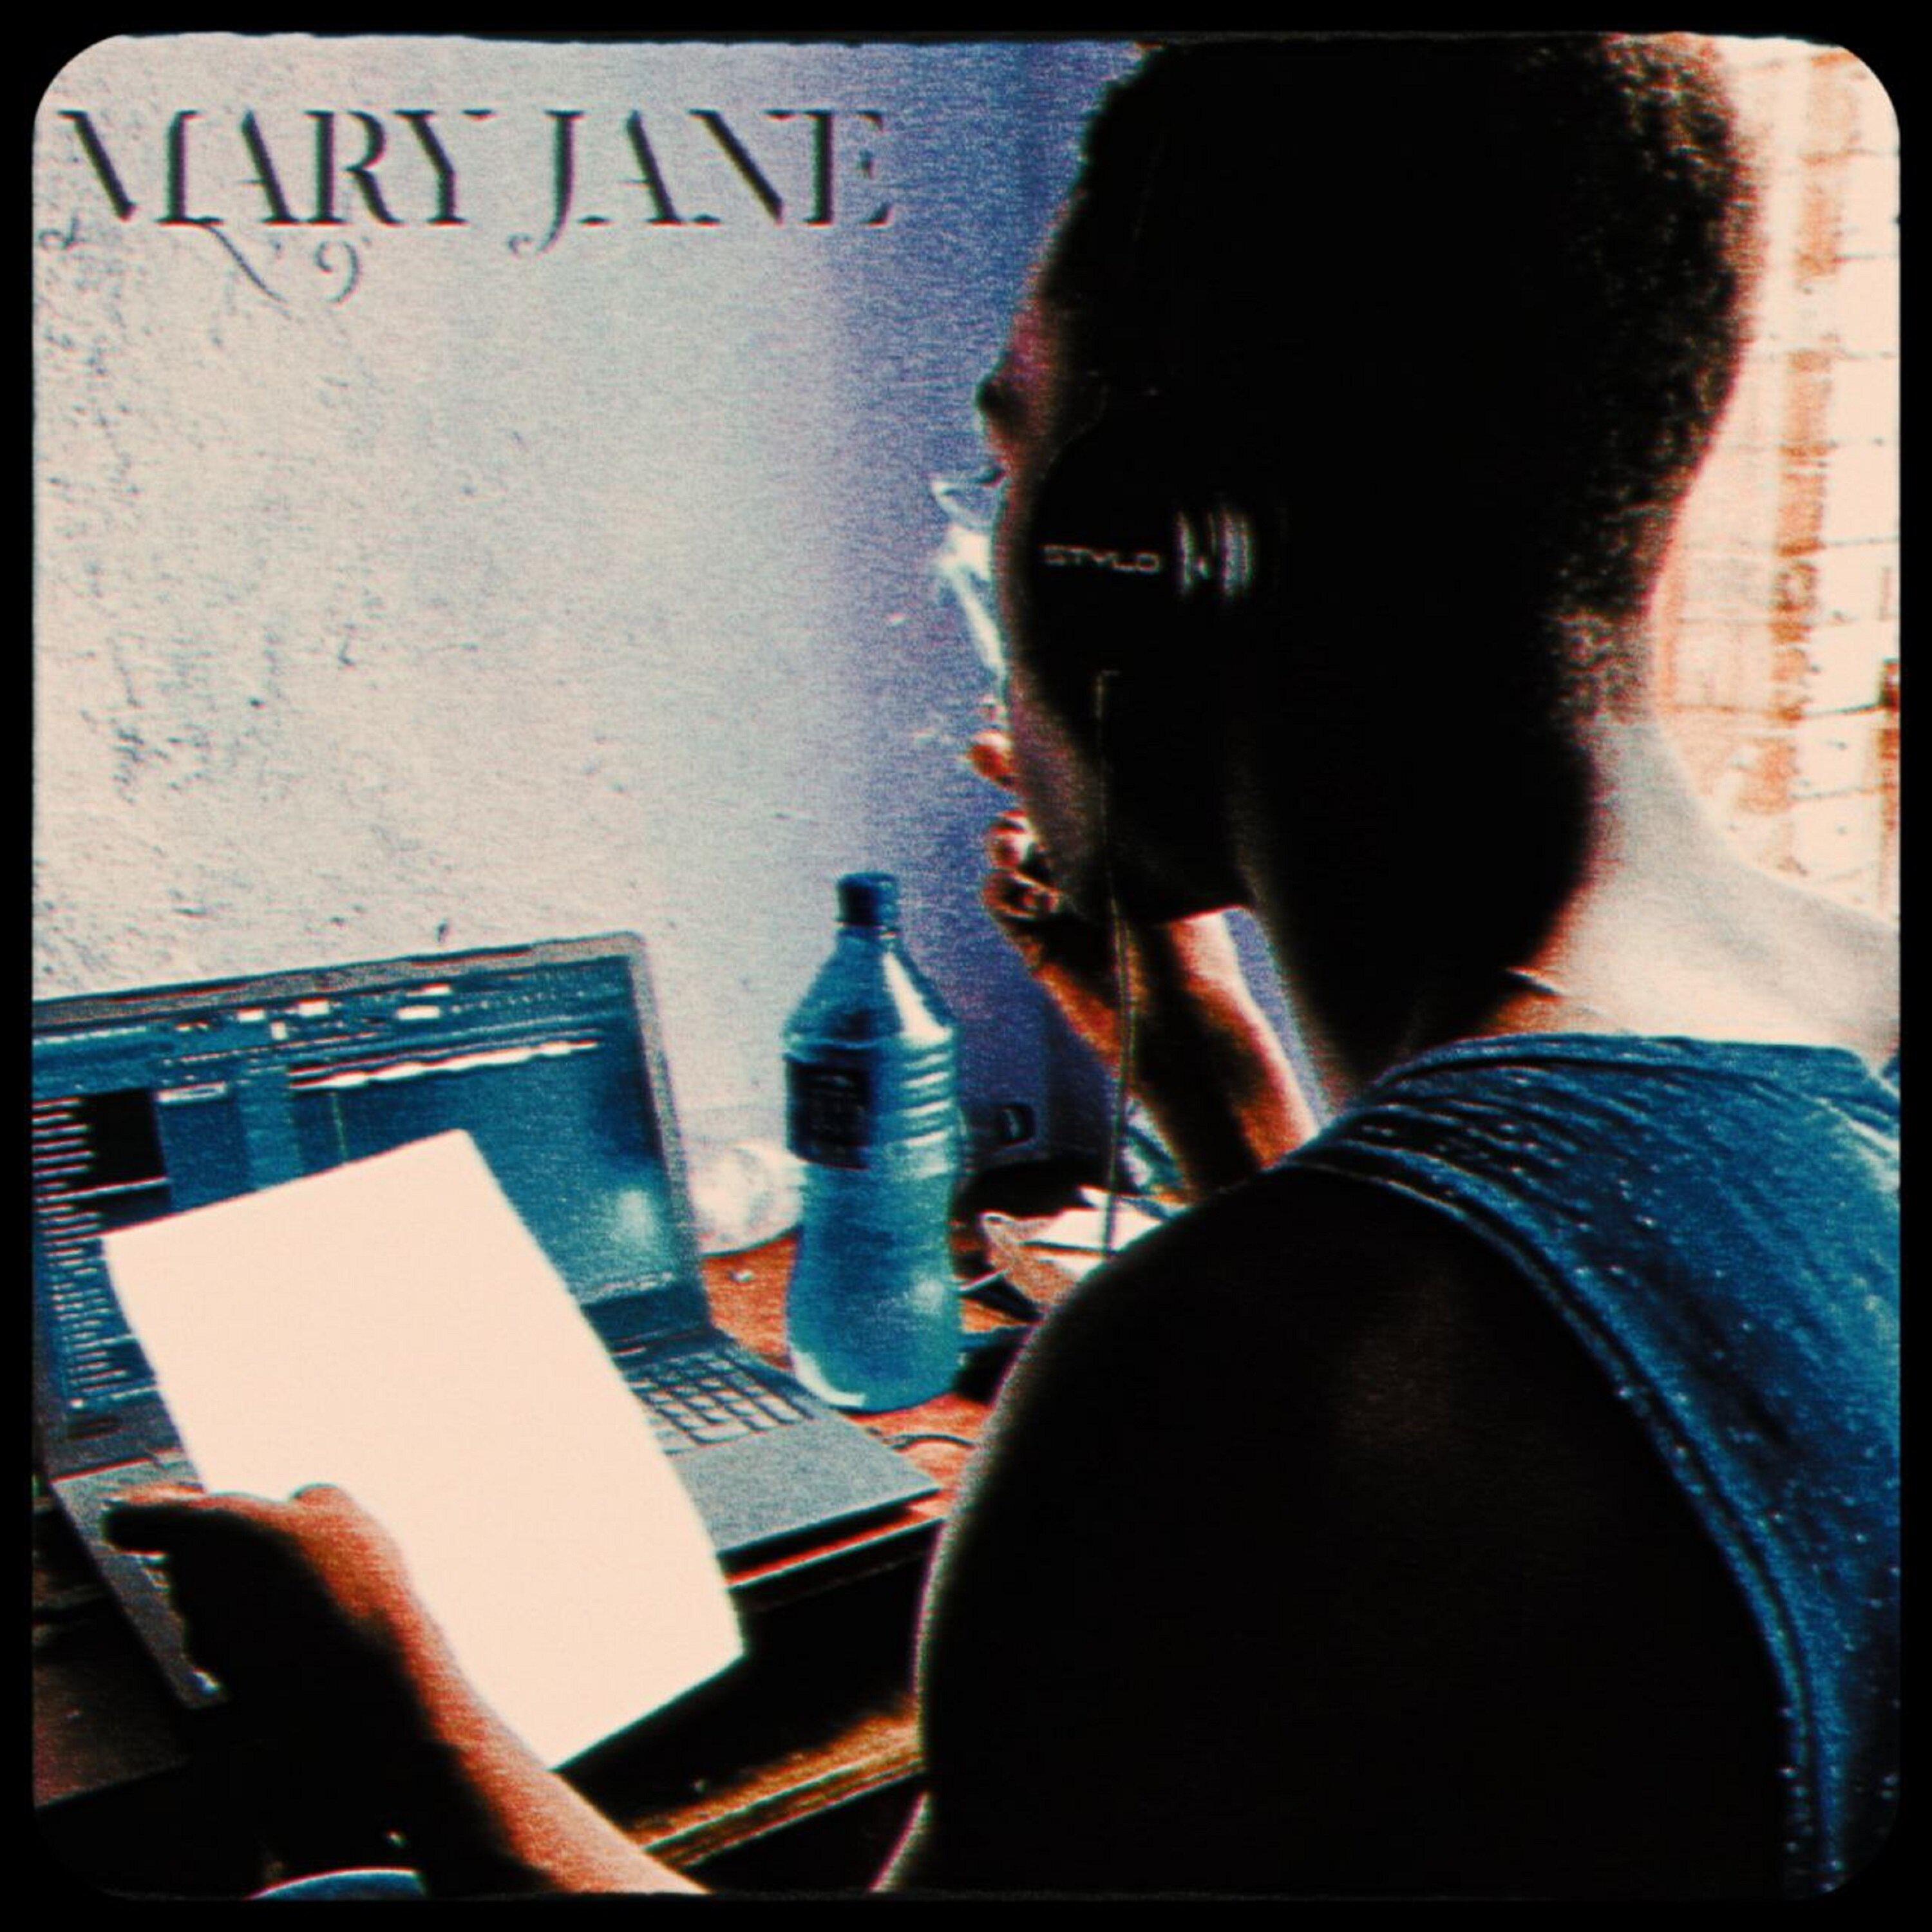 Mary Jane - Seage - 专辑 - 网易云音乐